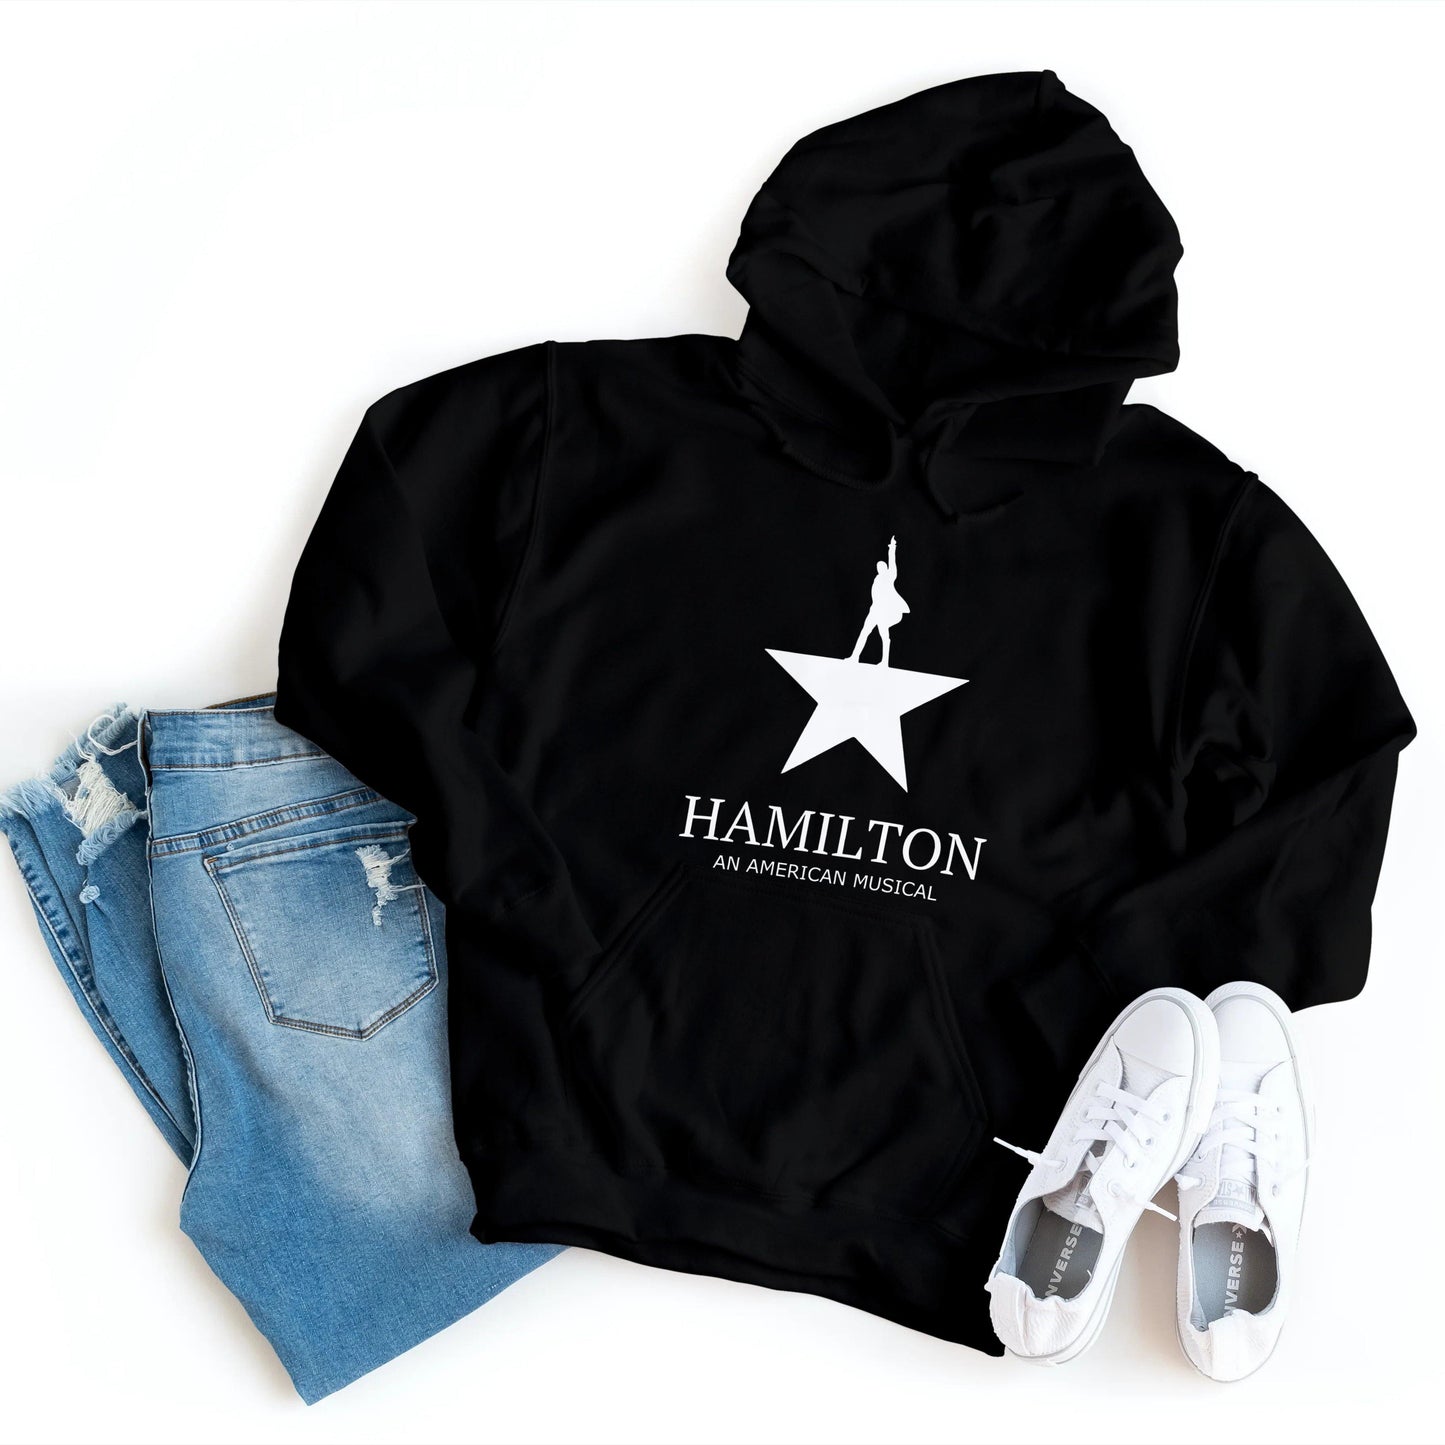 Hamilton - An American Musical - Hoodie - Healthy Wealthy Skinny